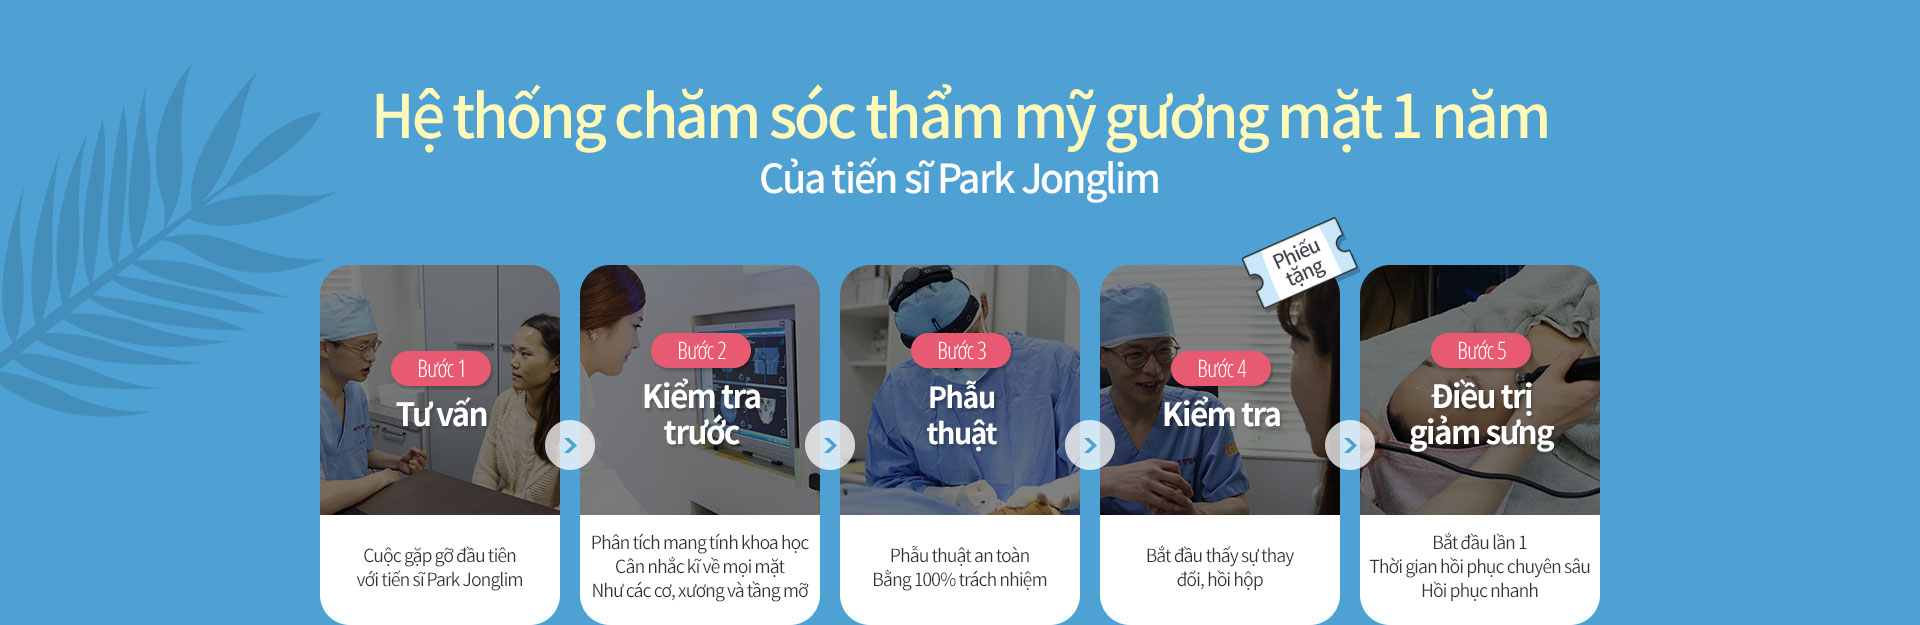 Hệ thống chăm sóc thẩm mỹ gương mặt 1 năm Của tiến sĩ Park Jonglim